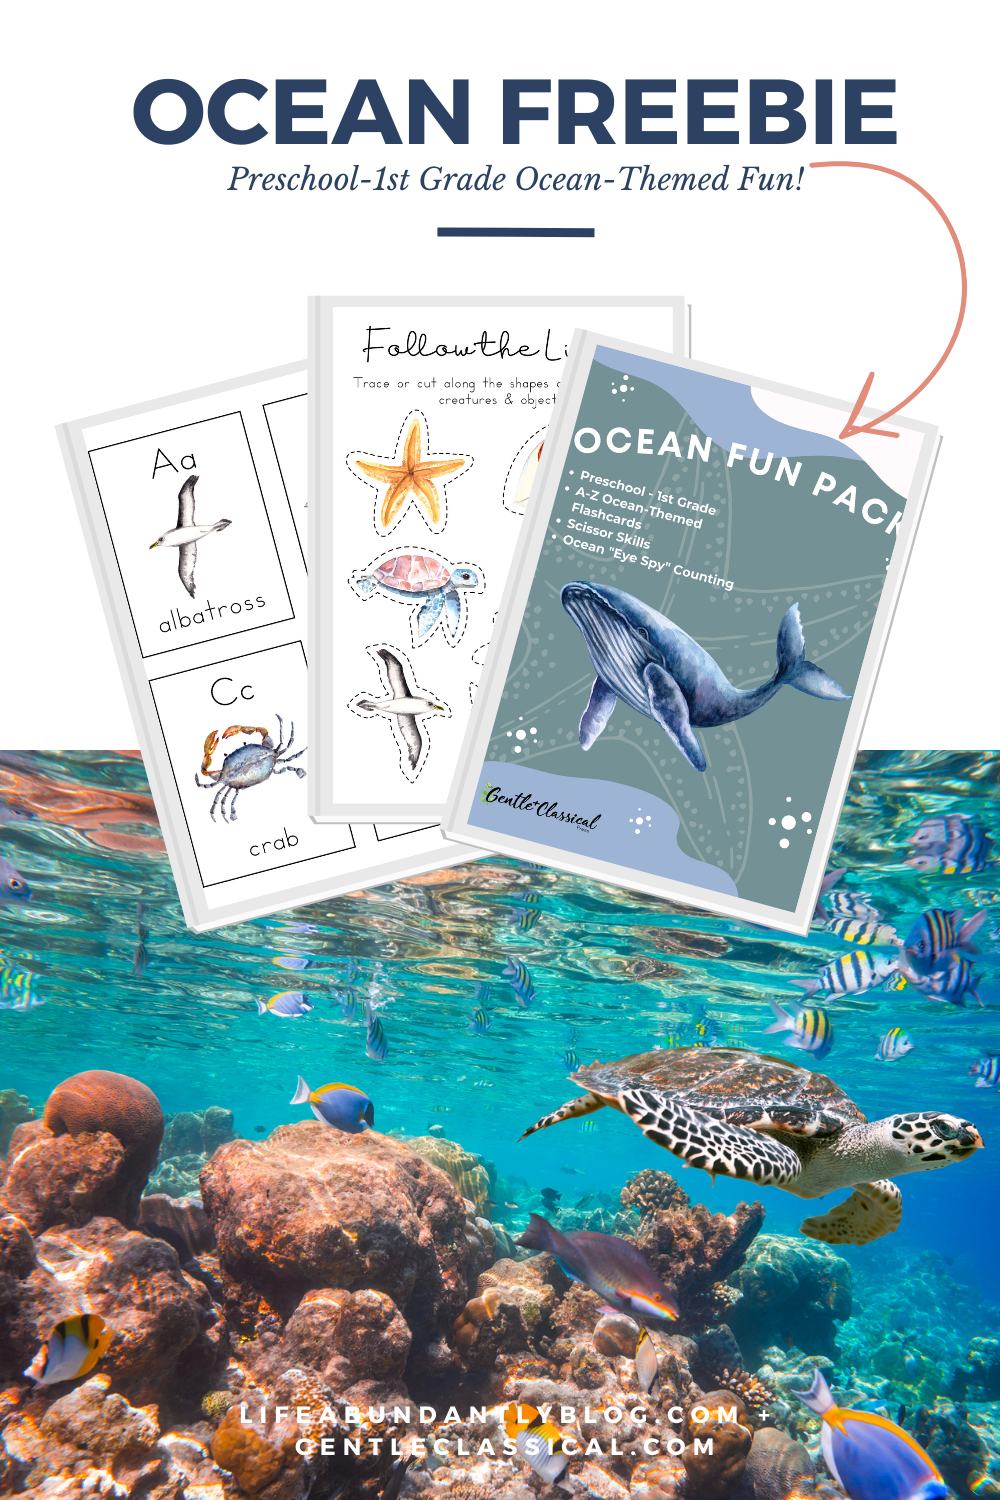 FREE: Ocean Fun Pack! — Life, Abundantly